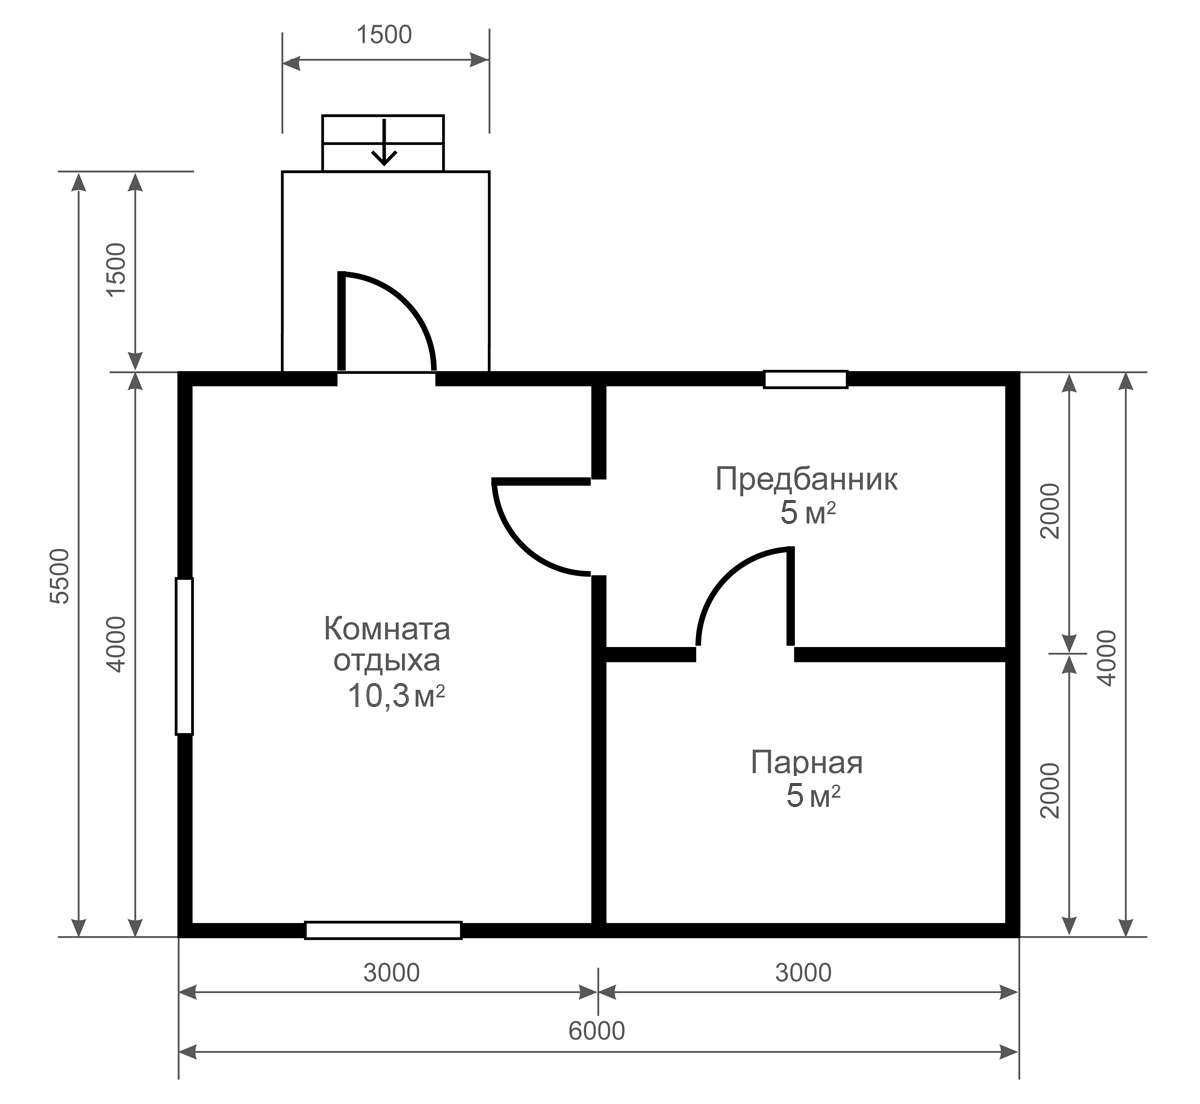 Оптимальные размеры бани - расчет габаритов и высоты потолков бани, количество помещений, расстановка мебели
оптимальные размеры бани - расчет габаритов и высоты потолков бани, количество помещений, расстановка мебели